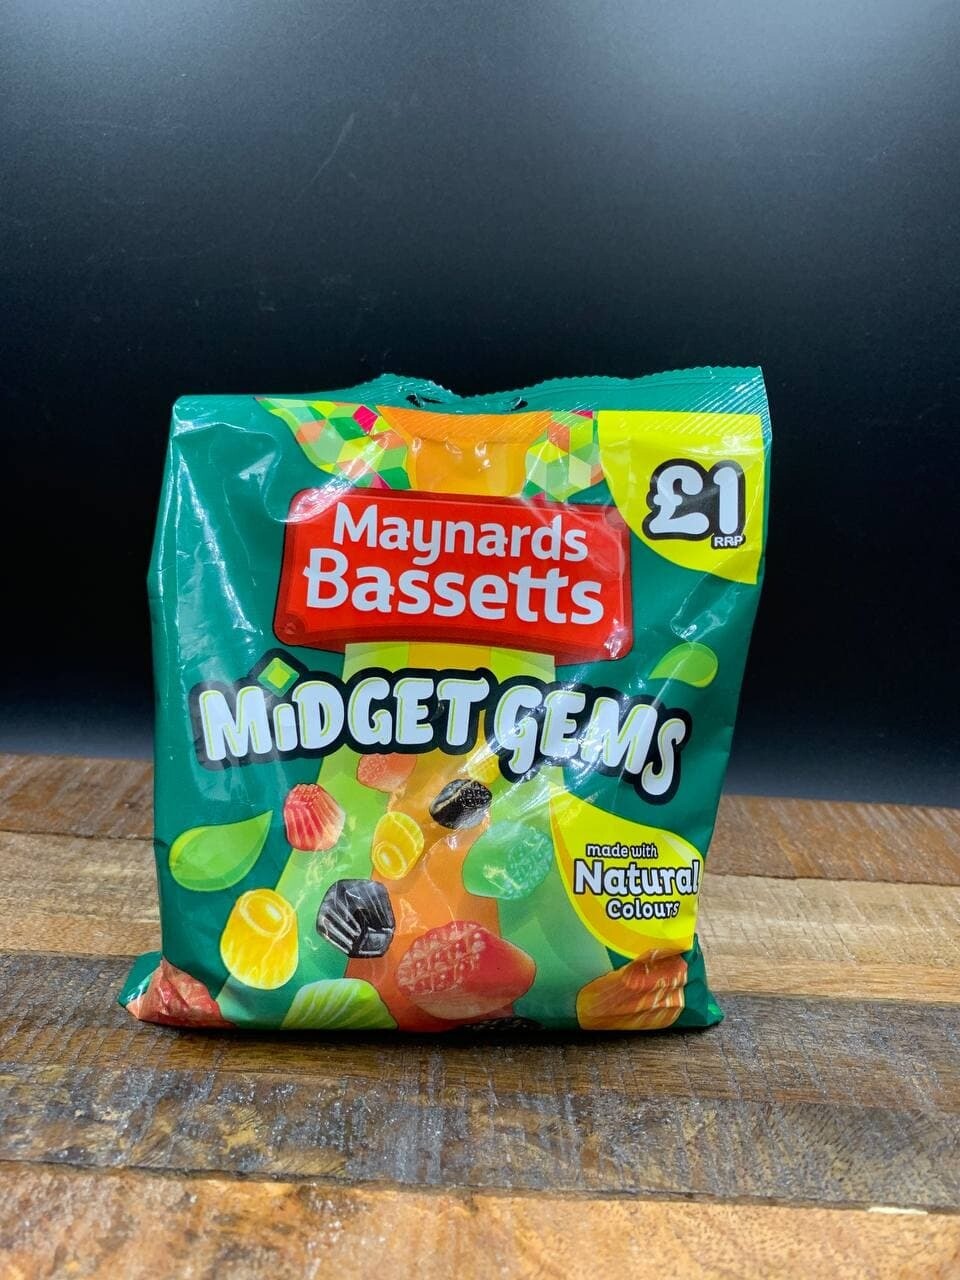 Maynards Bassetts Midget Gems 160g